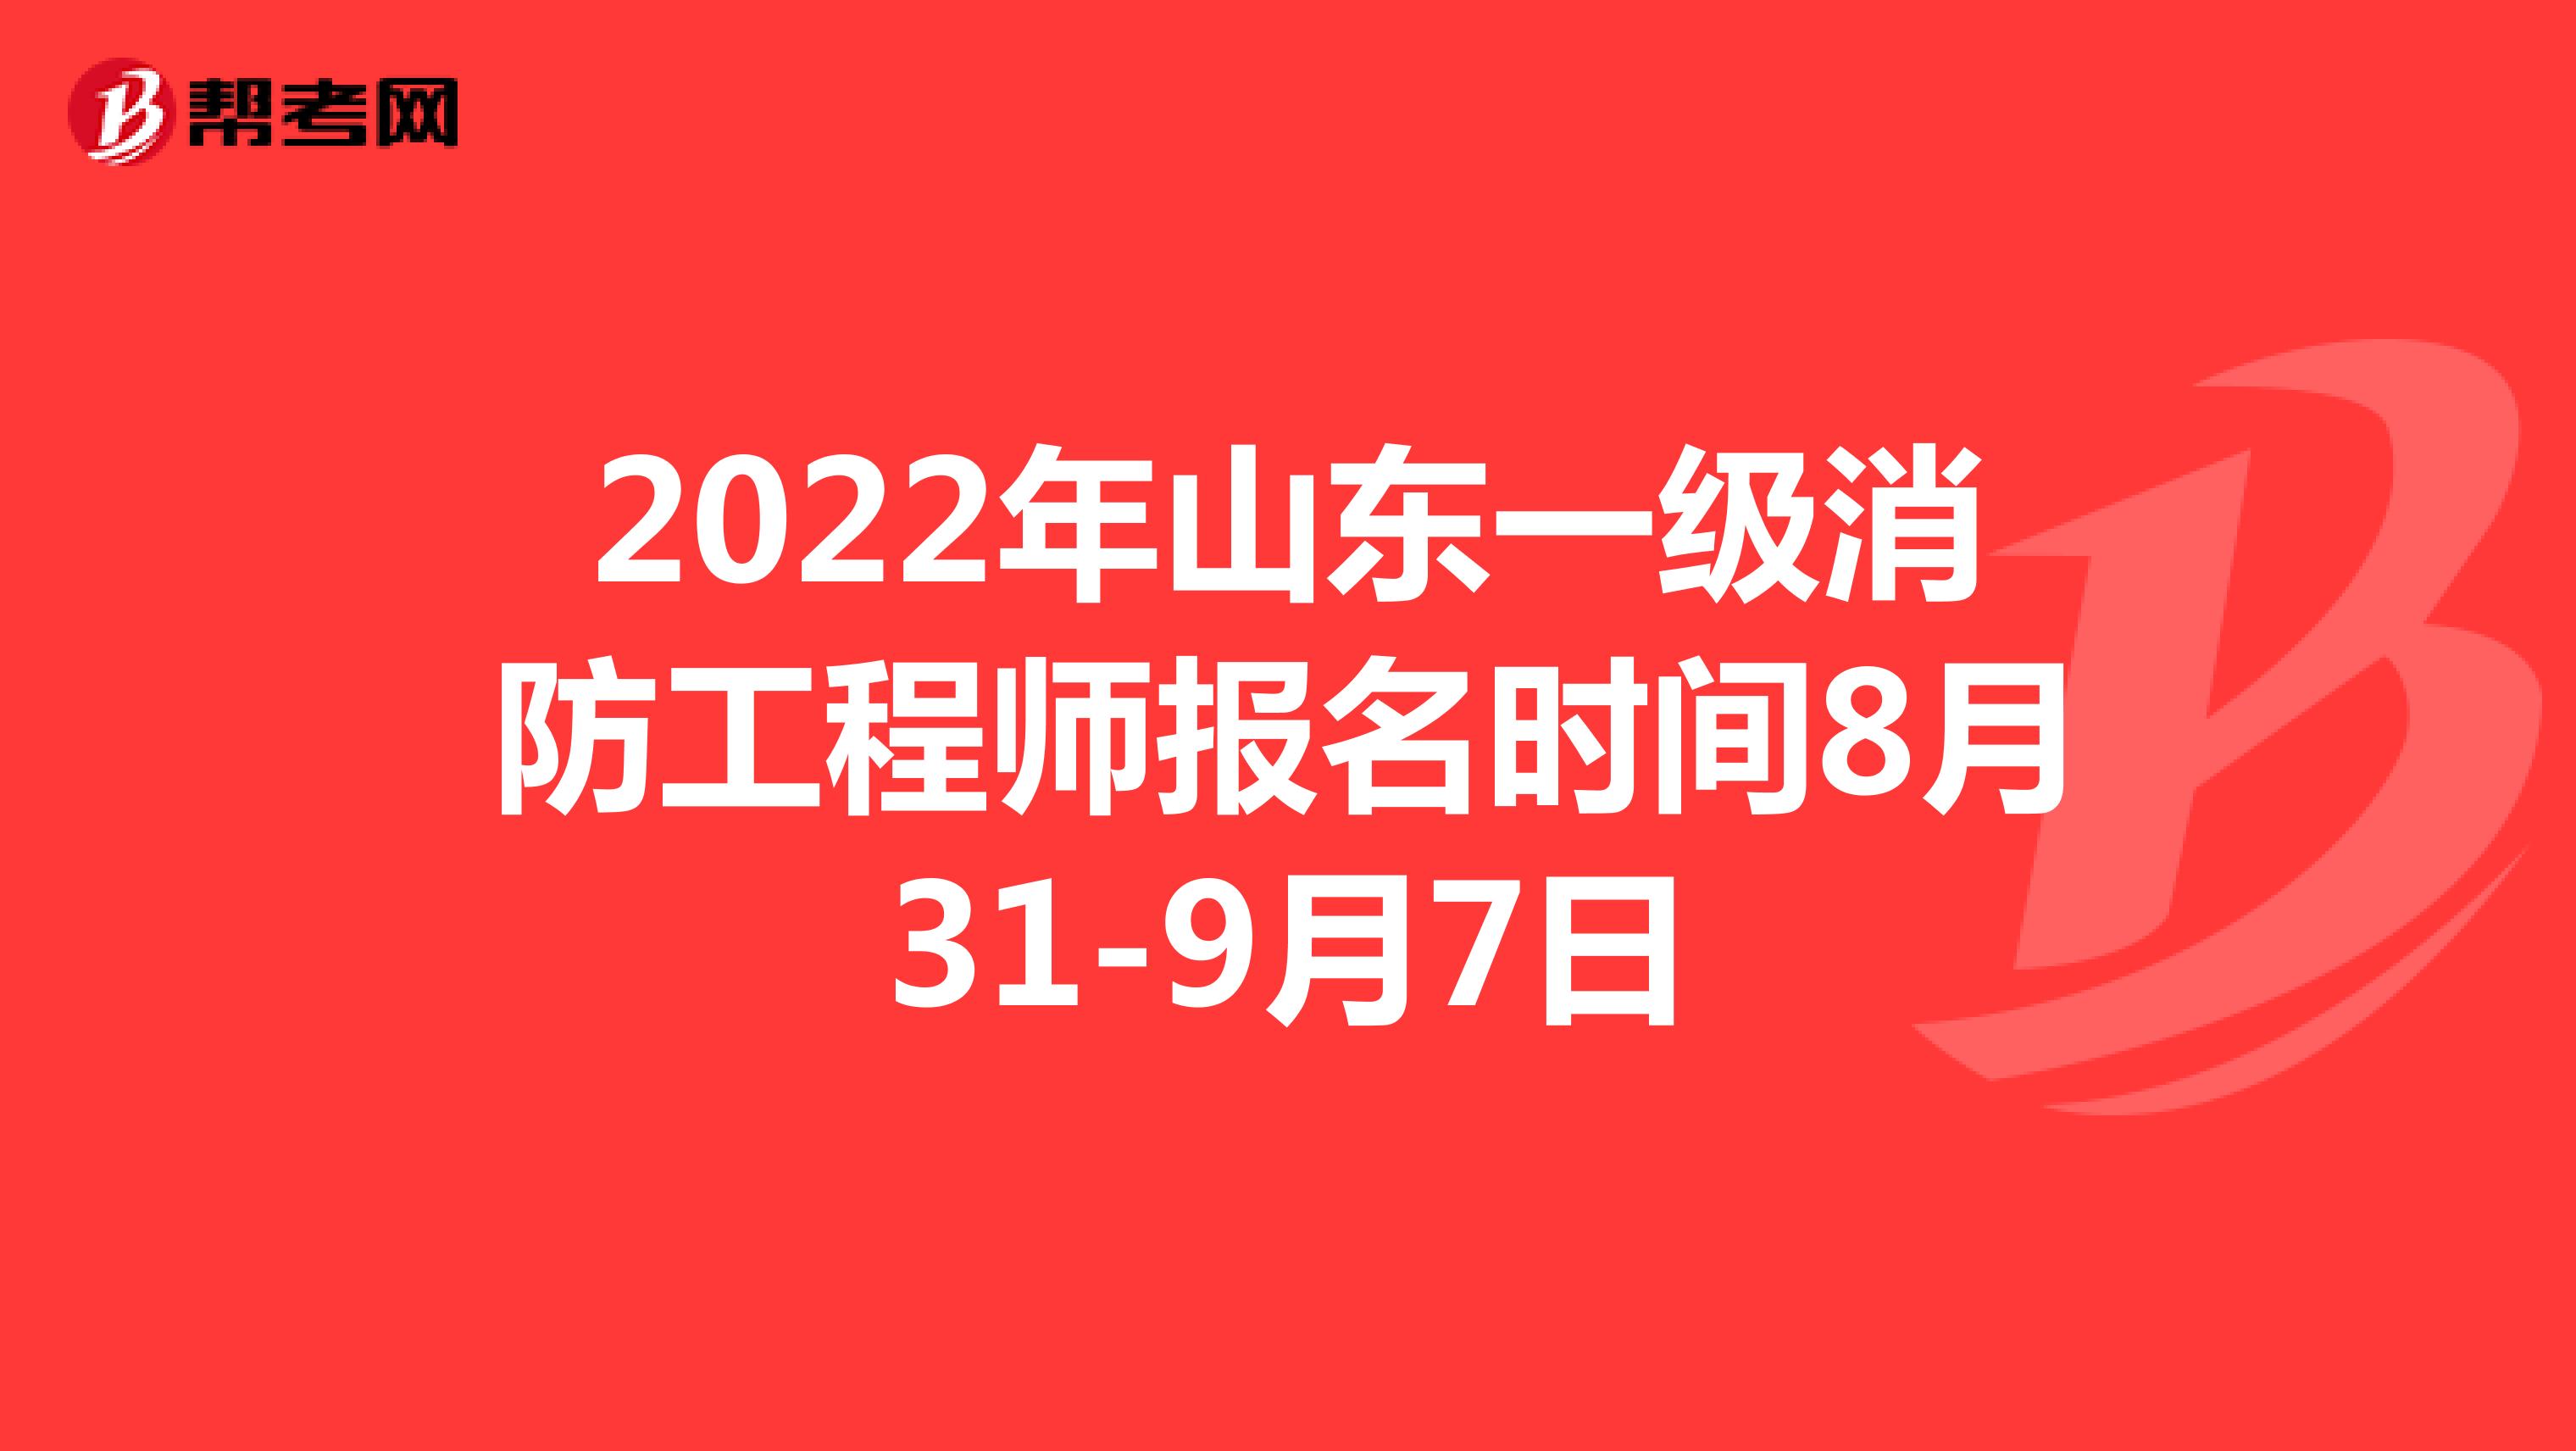 2022年山东一级消防工程师报名时间8月31-9月7日